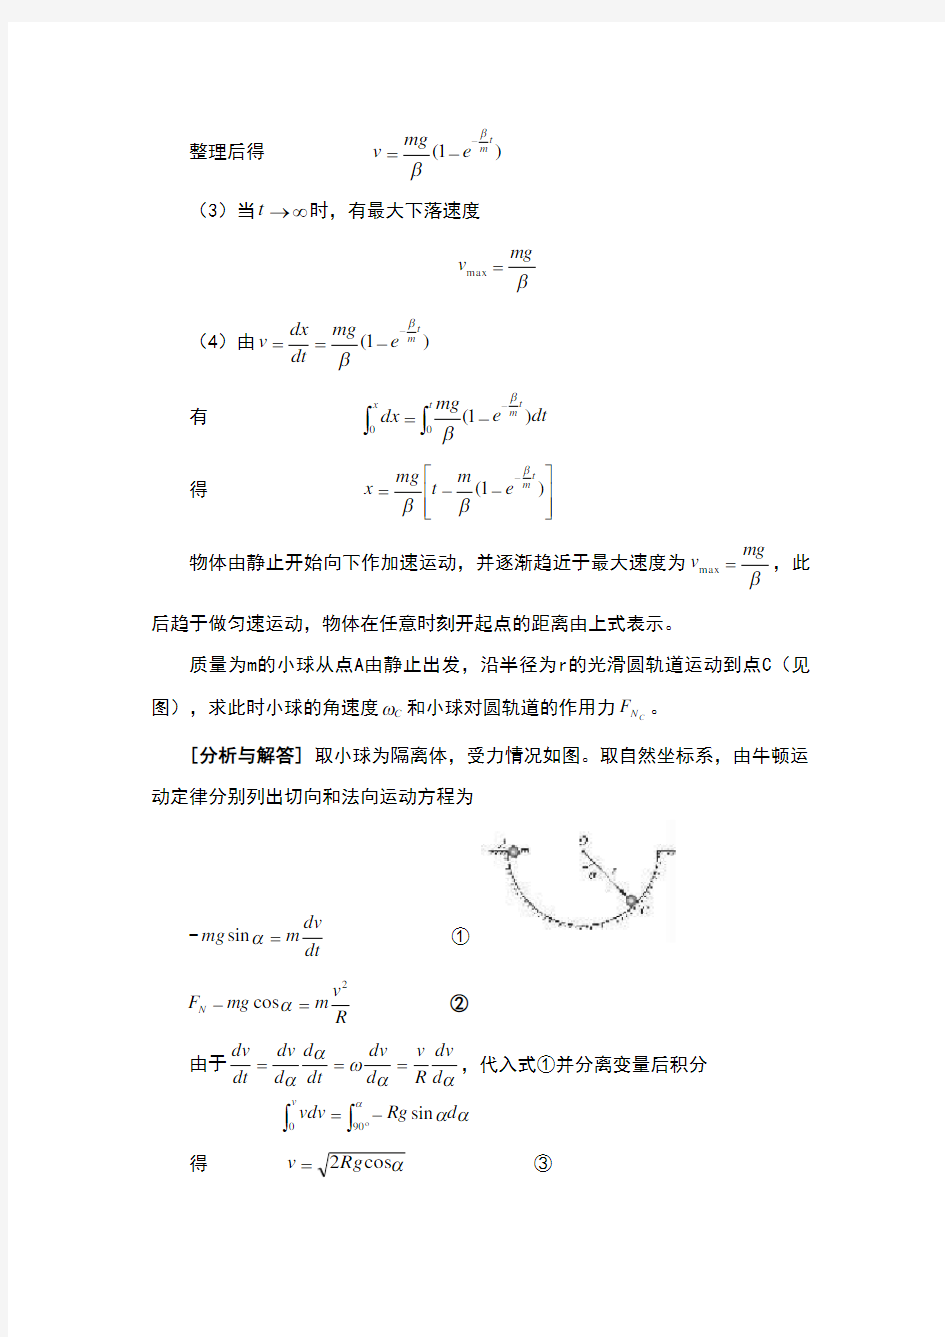 重庆科技学院 大学物理考试题库-应用题